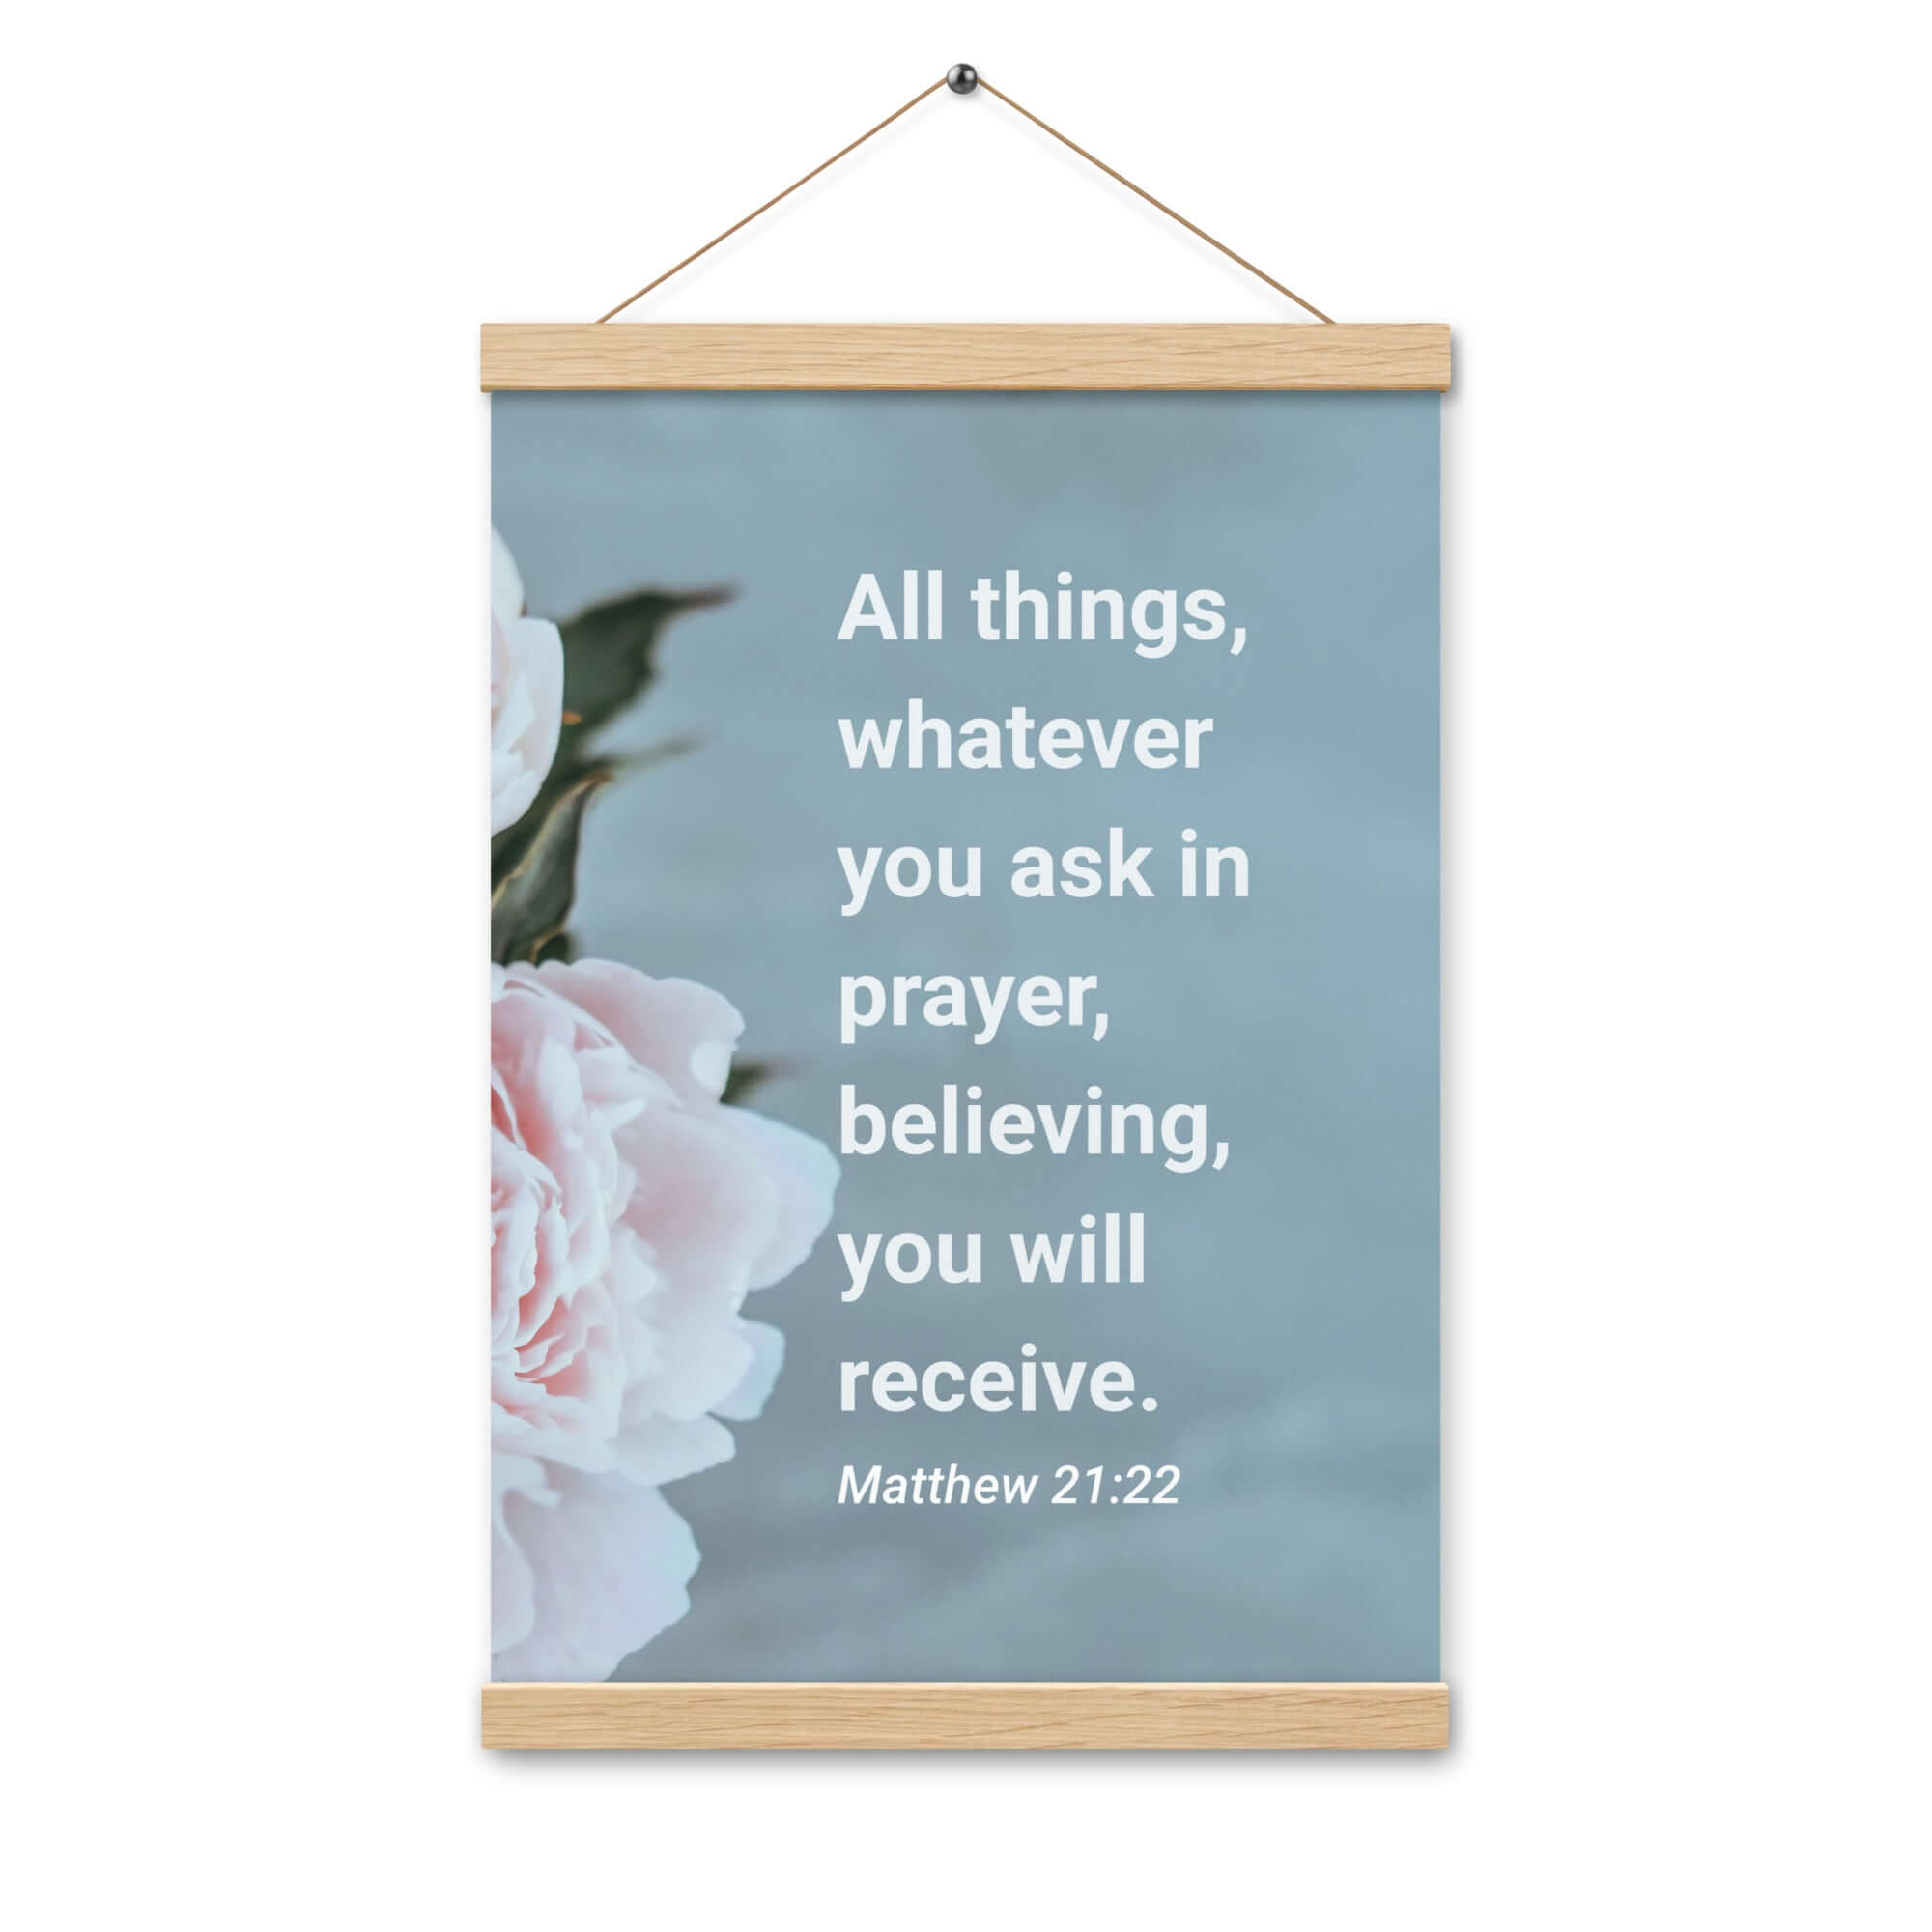 Matt 21:22 - Bible Verse, ask in prayer Enhanced Matte Paper Poster With Hanger